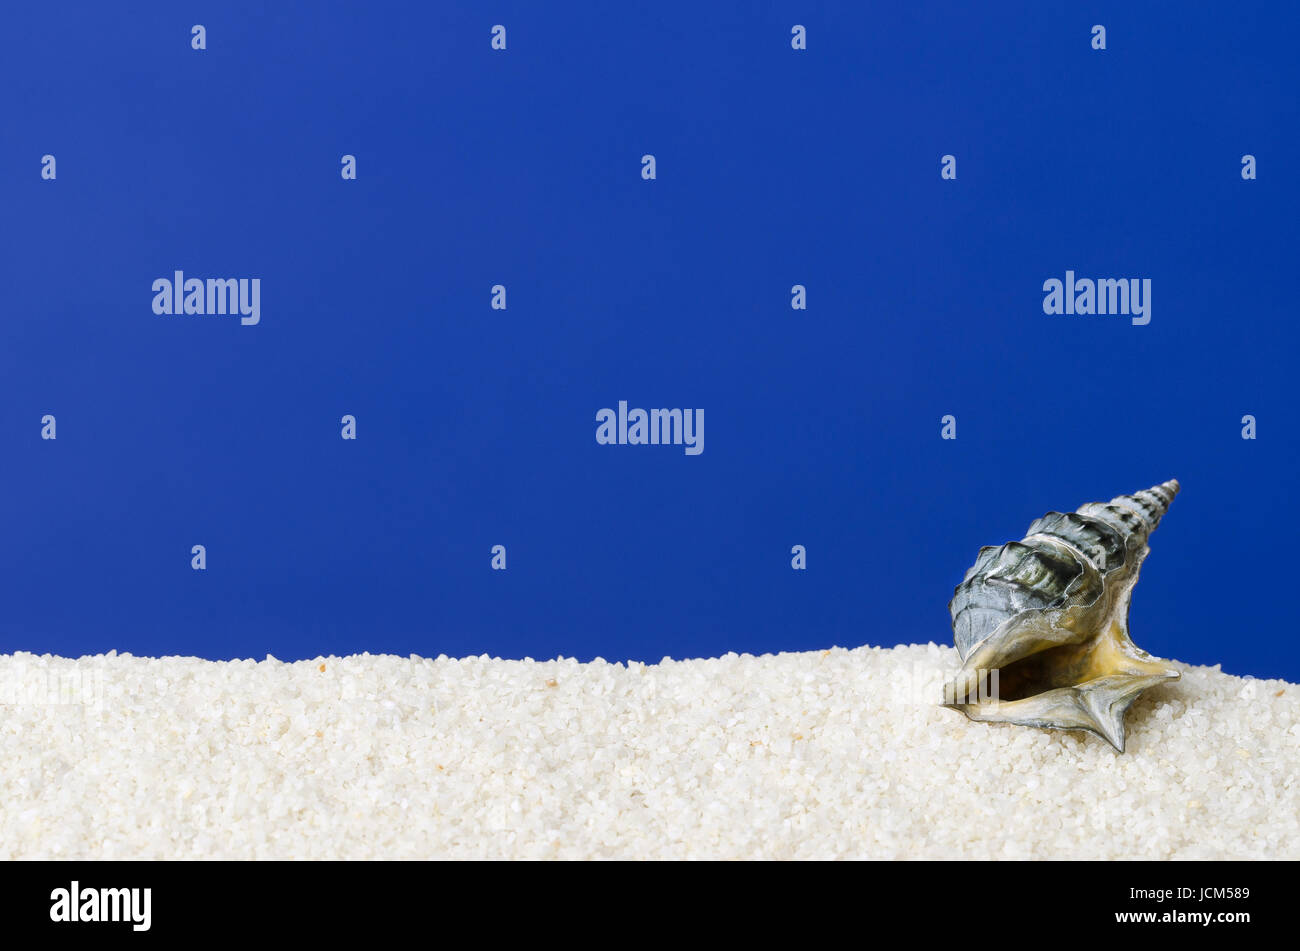 Meer Schneckenhaus auf weißem Sand mit ultramarinblauen Hintergrund. Kleines, dunkles grau eingefärbt, spiralförmig aufgewickelt Schale einer Meerwasser-Schnecke mit den kleinen Deckel. Stockfoto